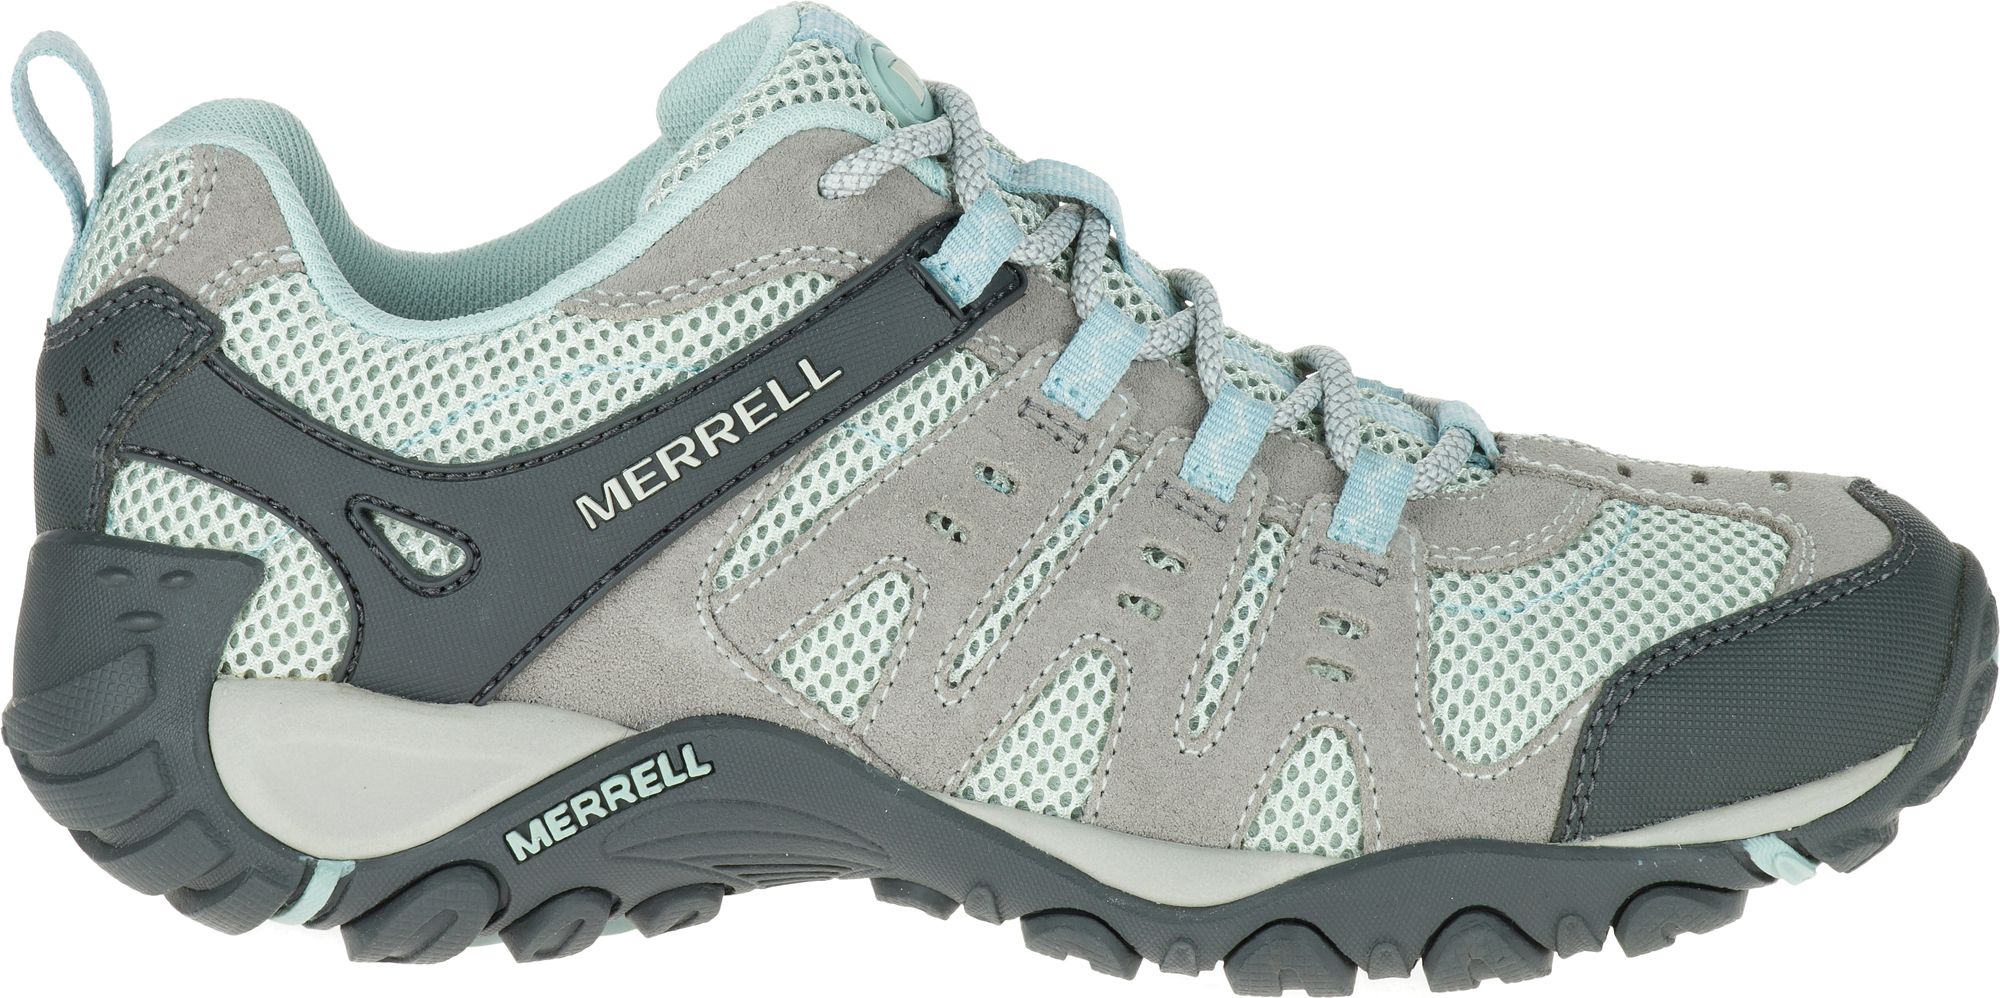 merrell waterproof walking shoes womens